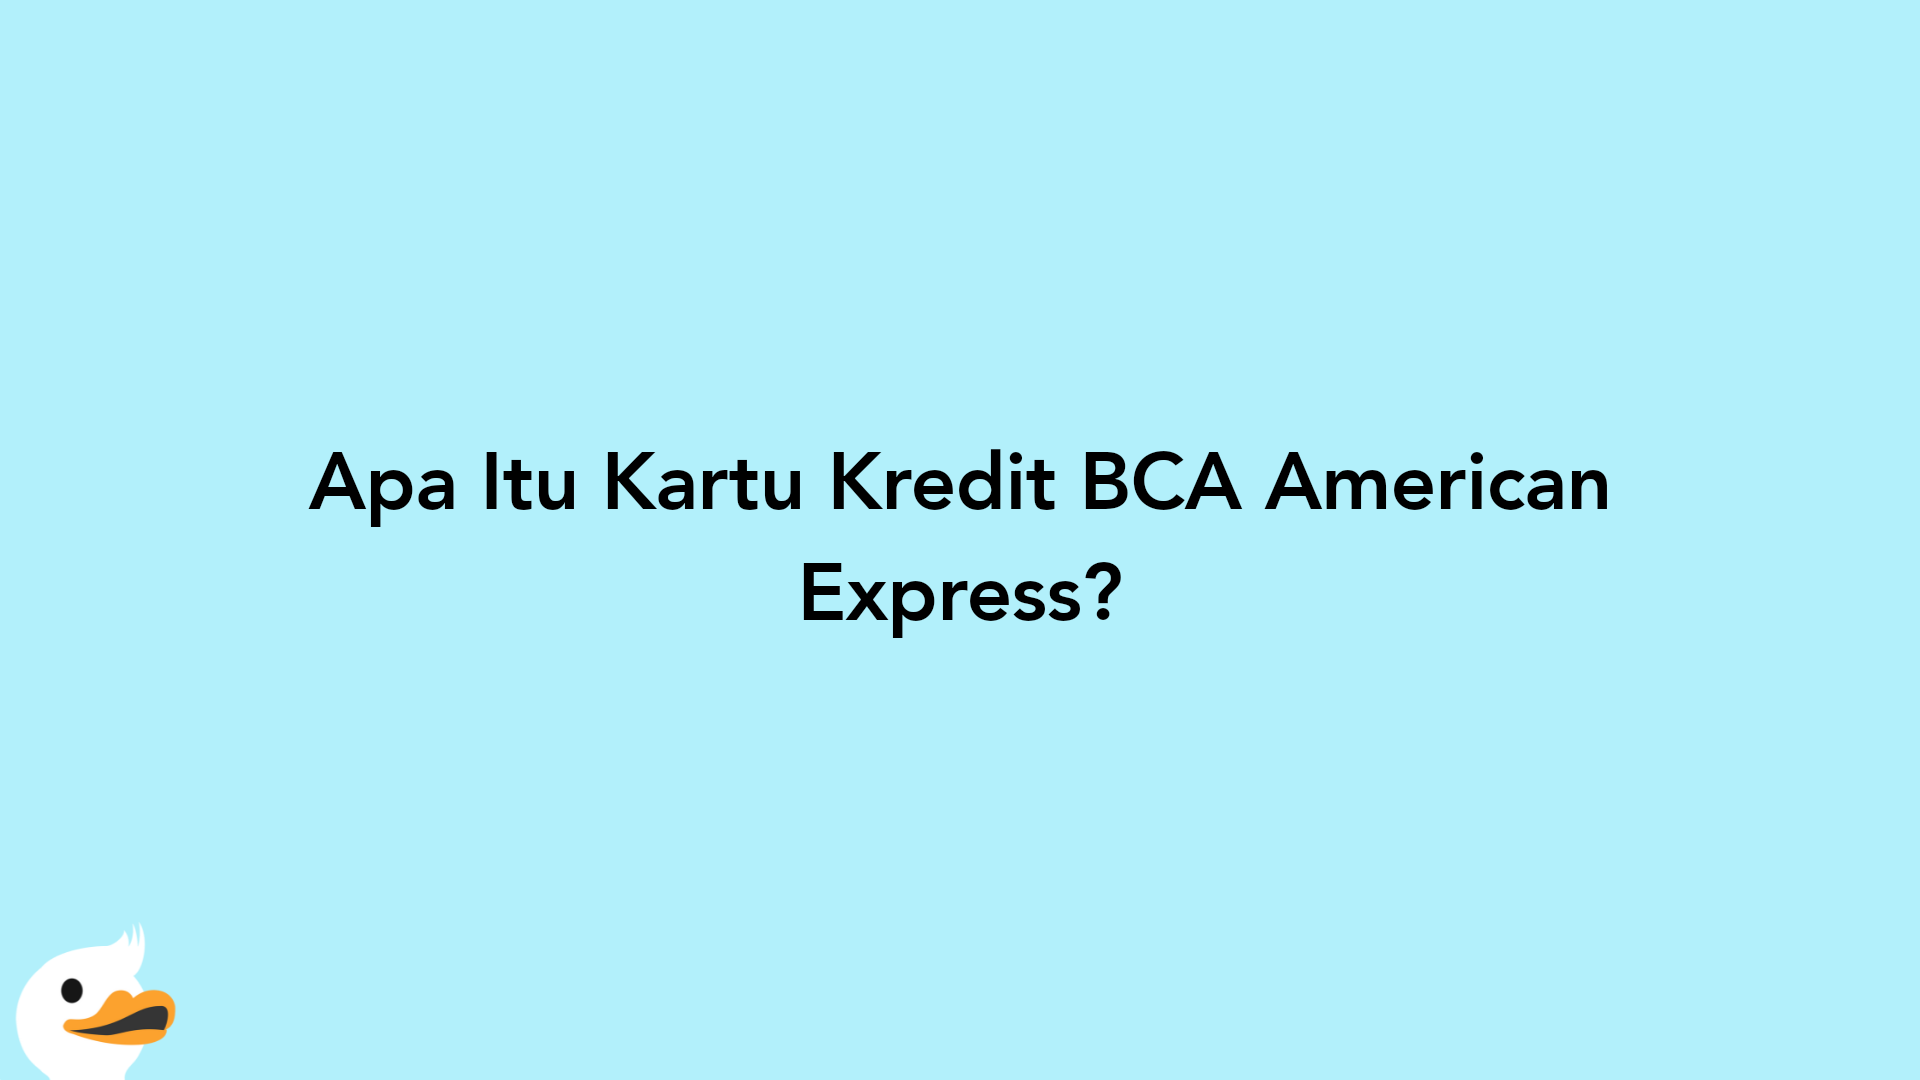 Apa Itu Kartu Kredit BCA American Express?